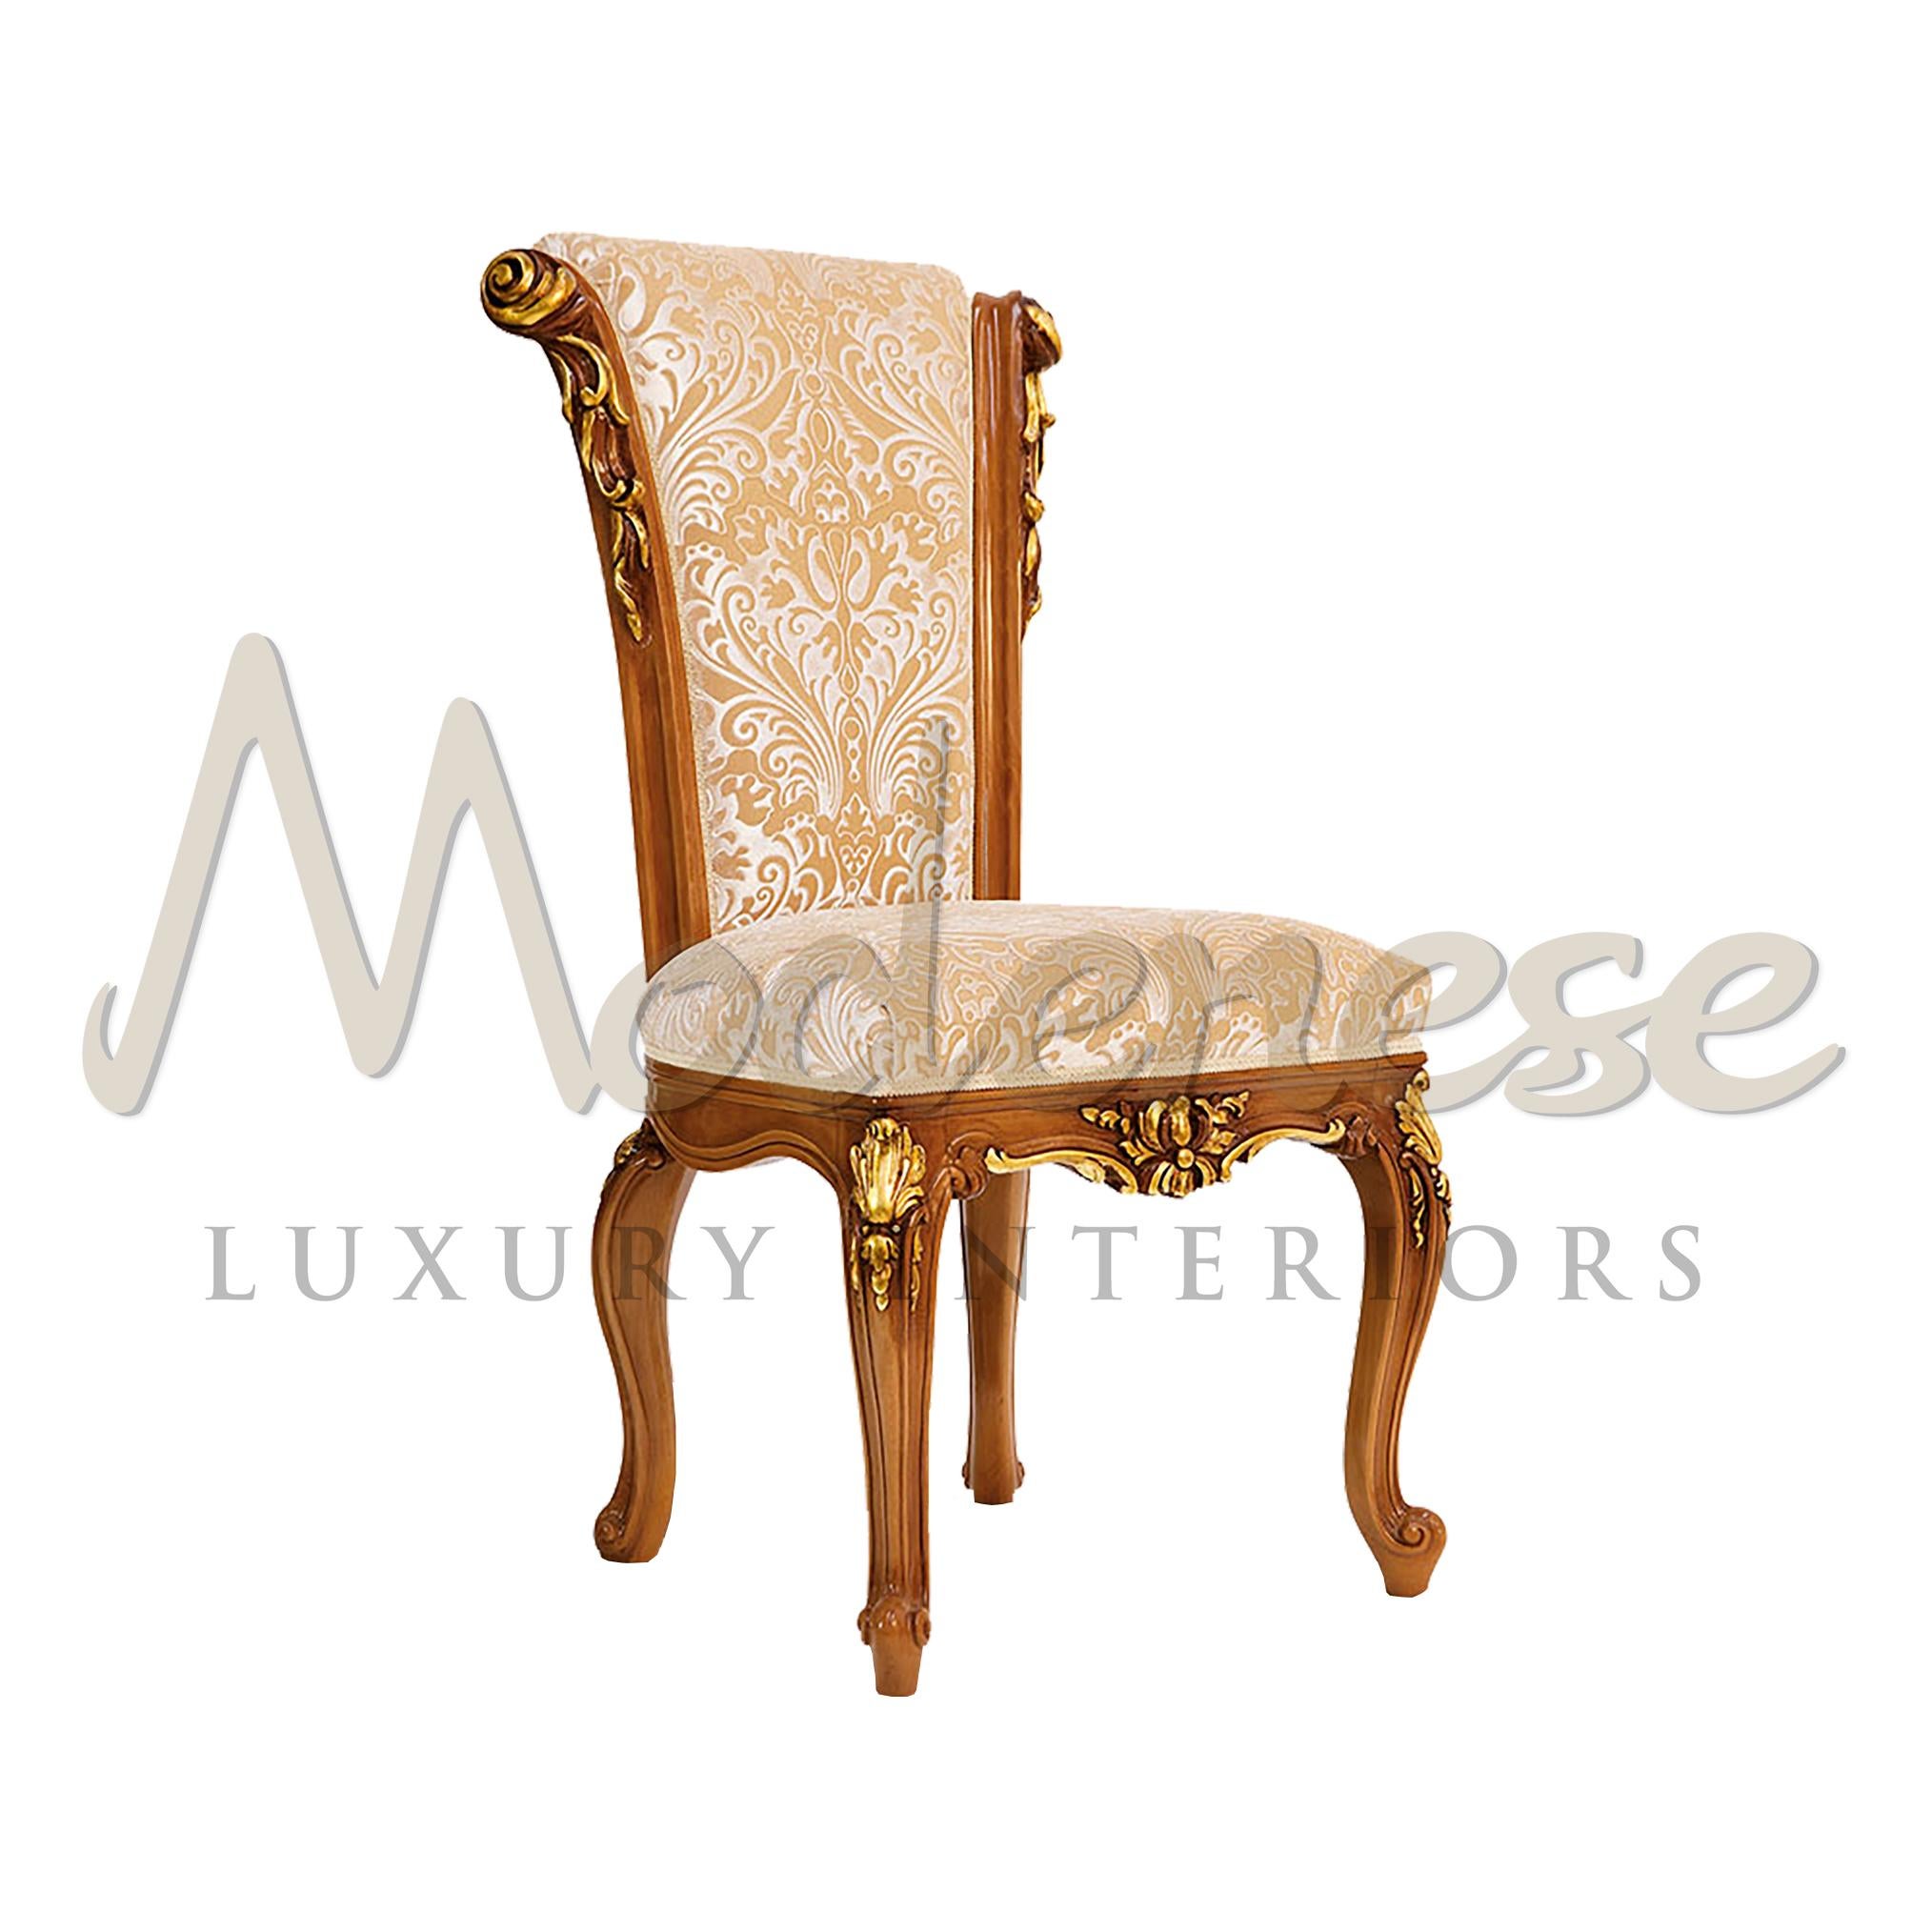 Verschönern Sie Ihr Esszimmer mit einem neoklassischen Beistellstuhl mit geschwungenen Linien von Modenese Luxury Interiors. Dieses raffinierte Sitzelement, das häufig in maßgeschneiderten Innenausstattungsprojekten verwendet wird, präsentiert